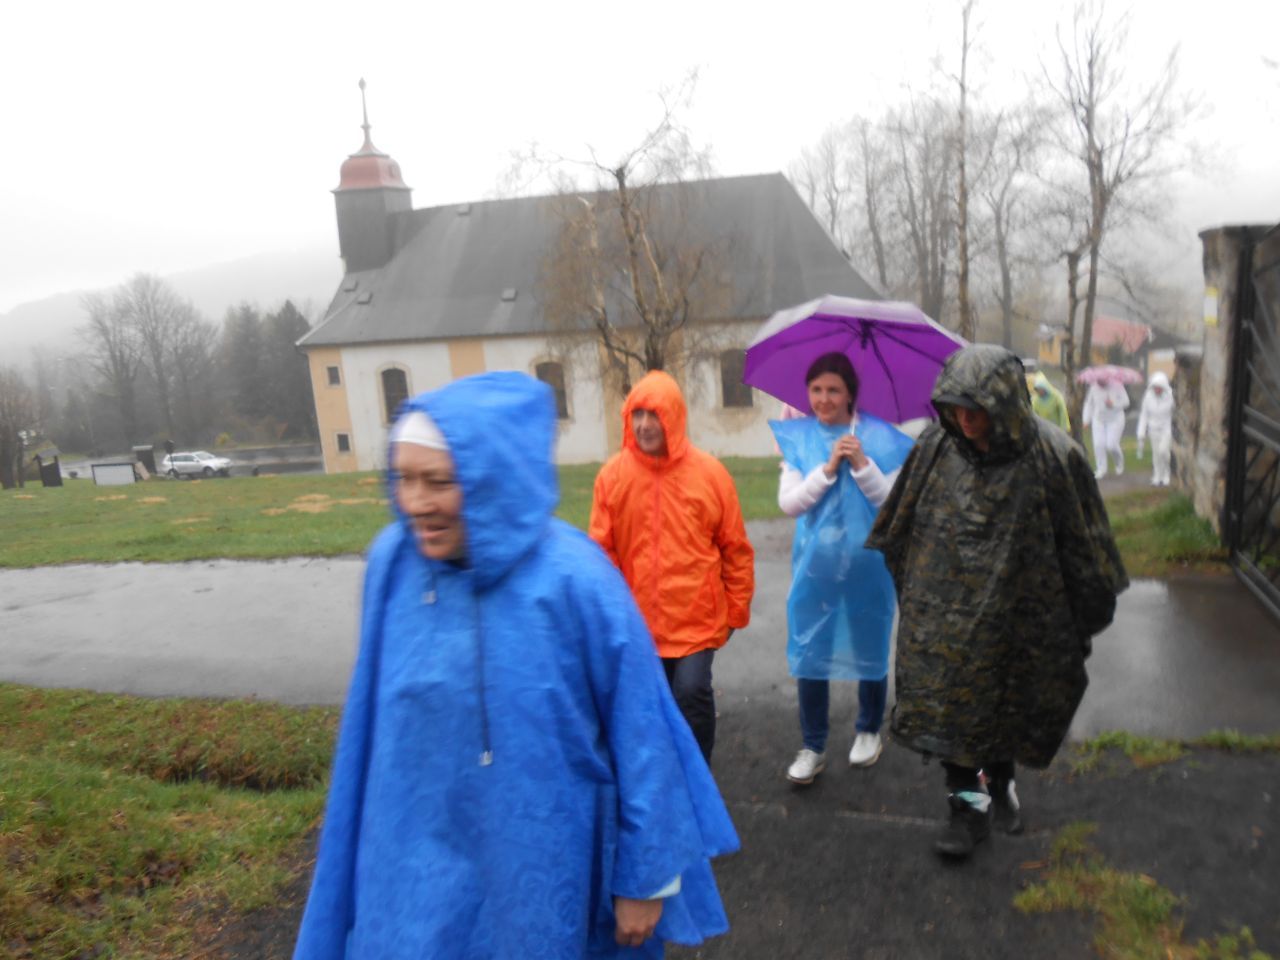 Дождевеки, плащи и зонты, все пригодилось в этот день, хоть и не спаслоот промокания. - ФОТО из поездки по Европе апрель 2018